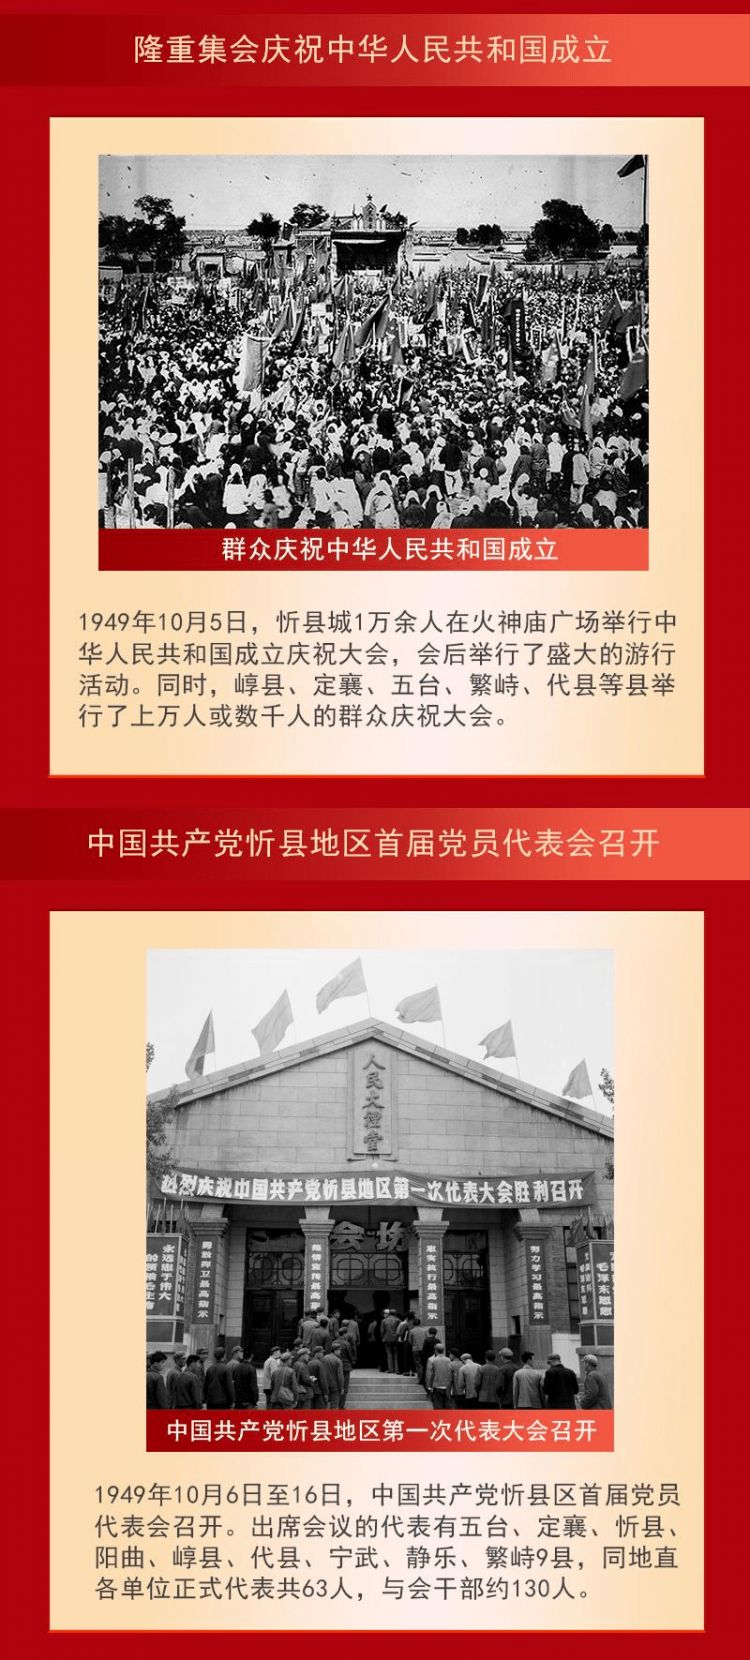 【百年征程·忻州画卷】之二建立人民当家作主政权艰苦奋斗抓好建设发展